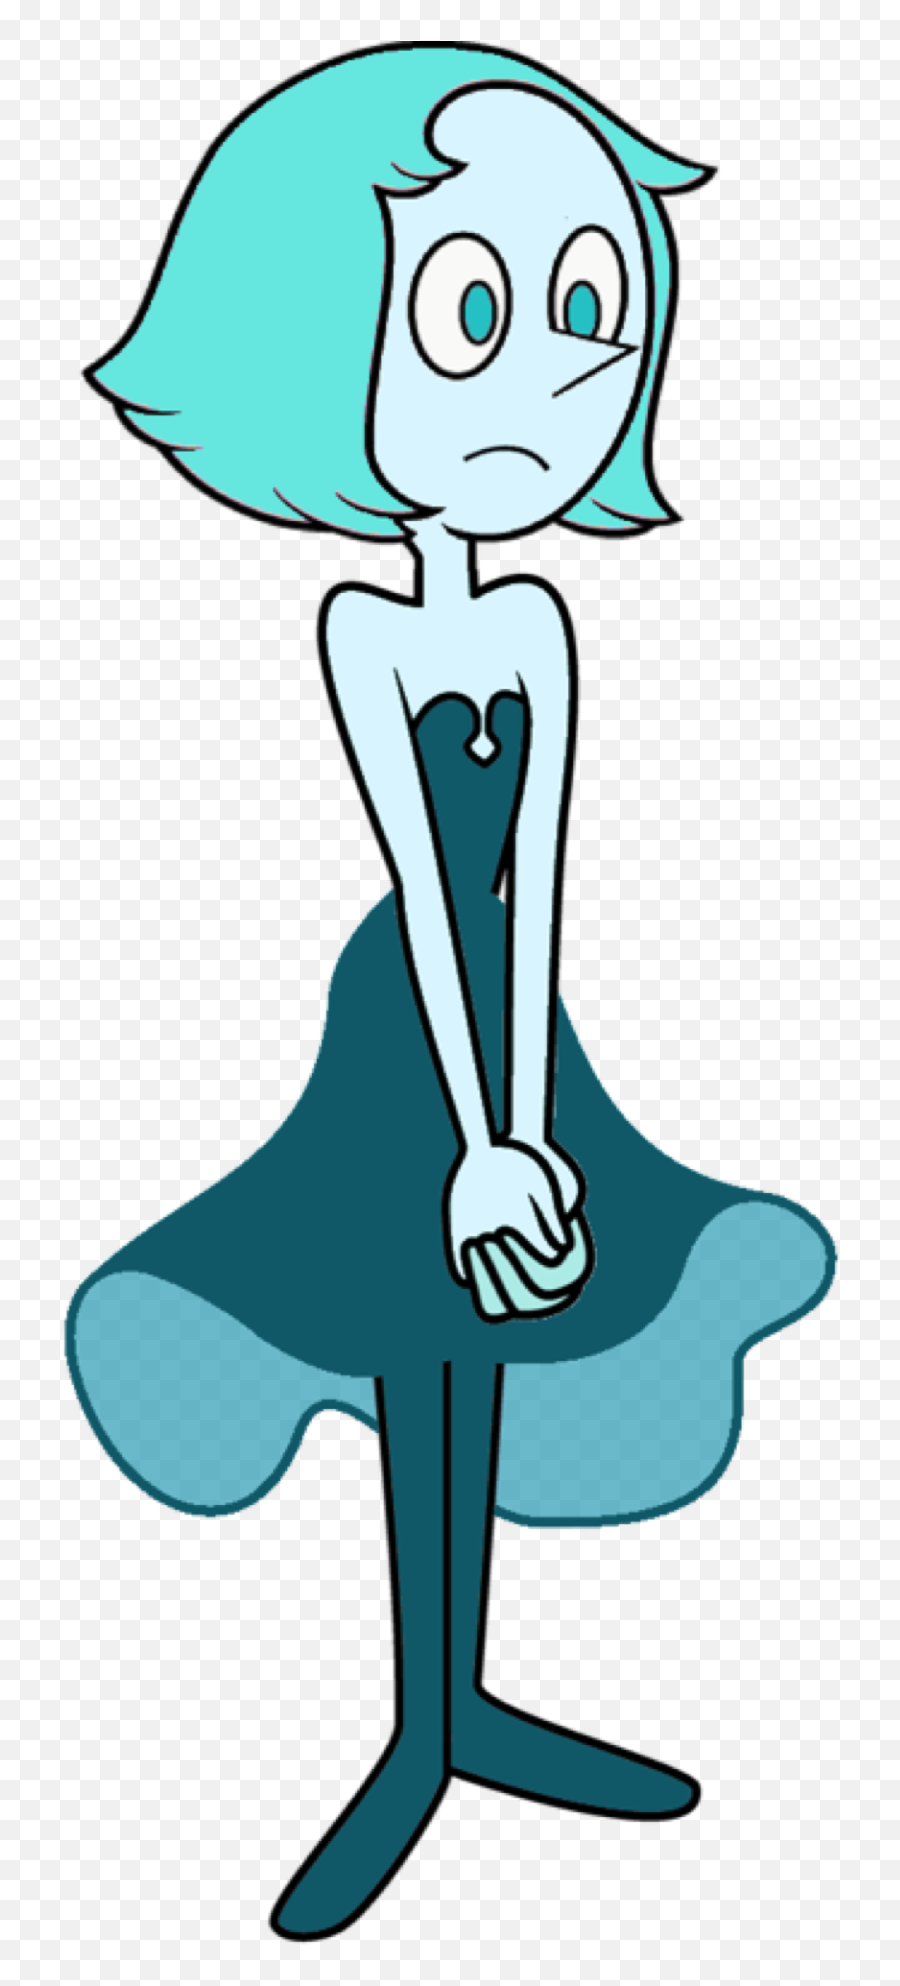 Aqua Pearl Steven Universe - Steven Universe Blue Pearl And Blue Diamond Png,Steven Universe Png